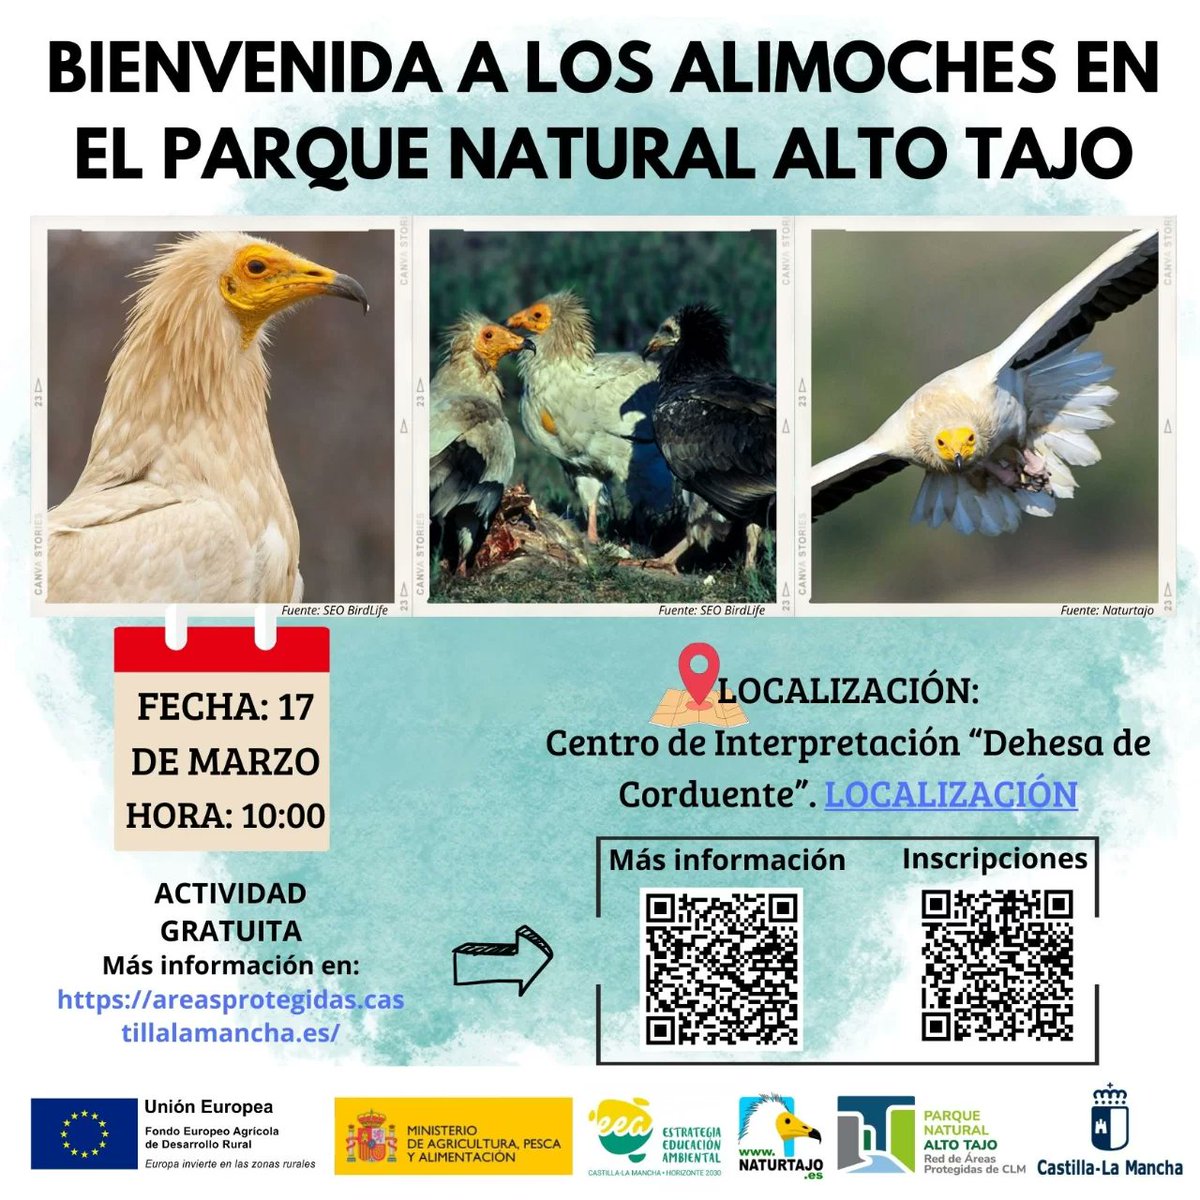 🦅Descubre la Fascinante Vida de los #Alimoches en el #ParqueNaturalAltoTajo via @Guadared_info @naturtajo @PNAltoTajo @molina_altotajo guadared.com/descubre-la-fa… #NaturalezaViva #GuadaTurismo #GuadaNaturaleza #GuadaRed